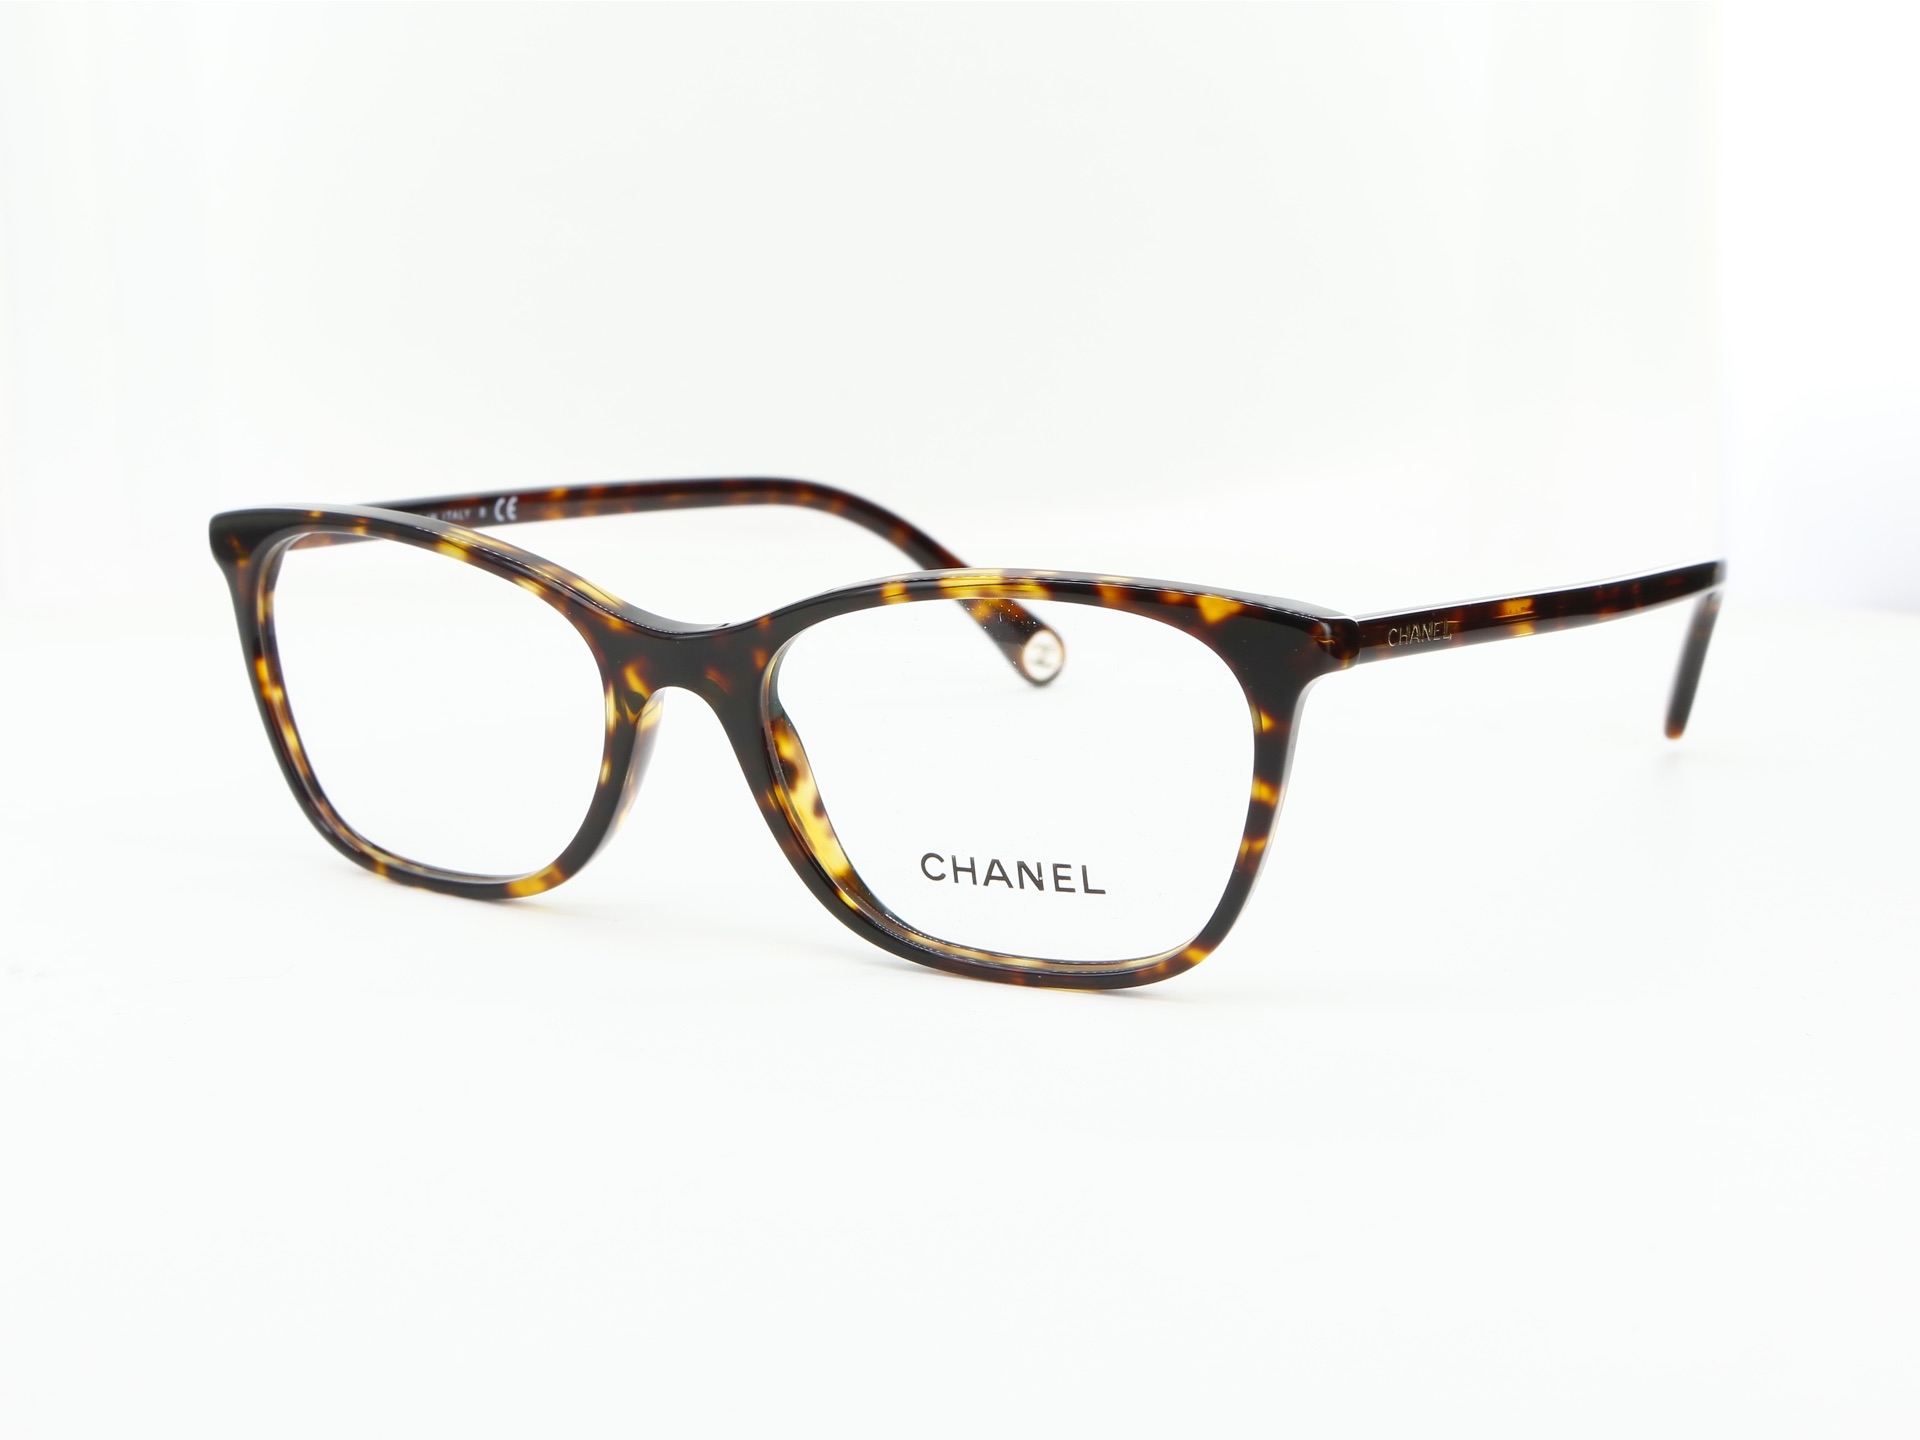 Chanel - ref: 84893